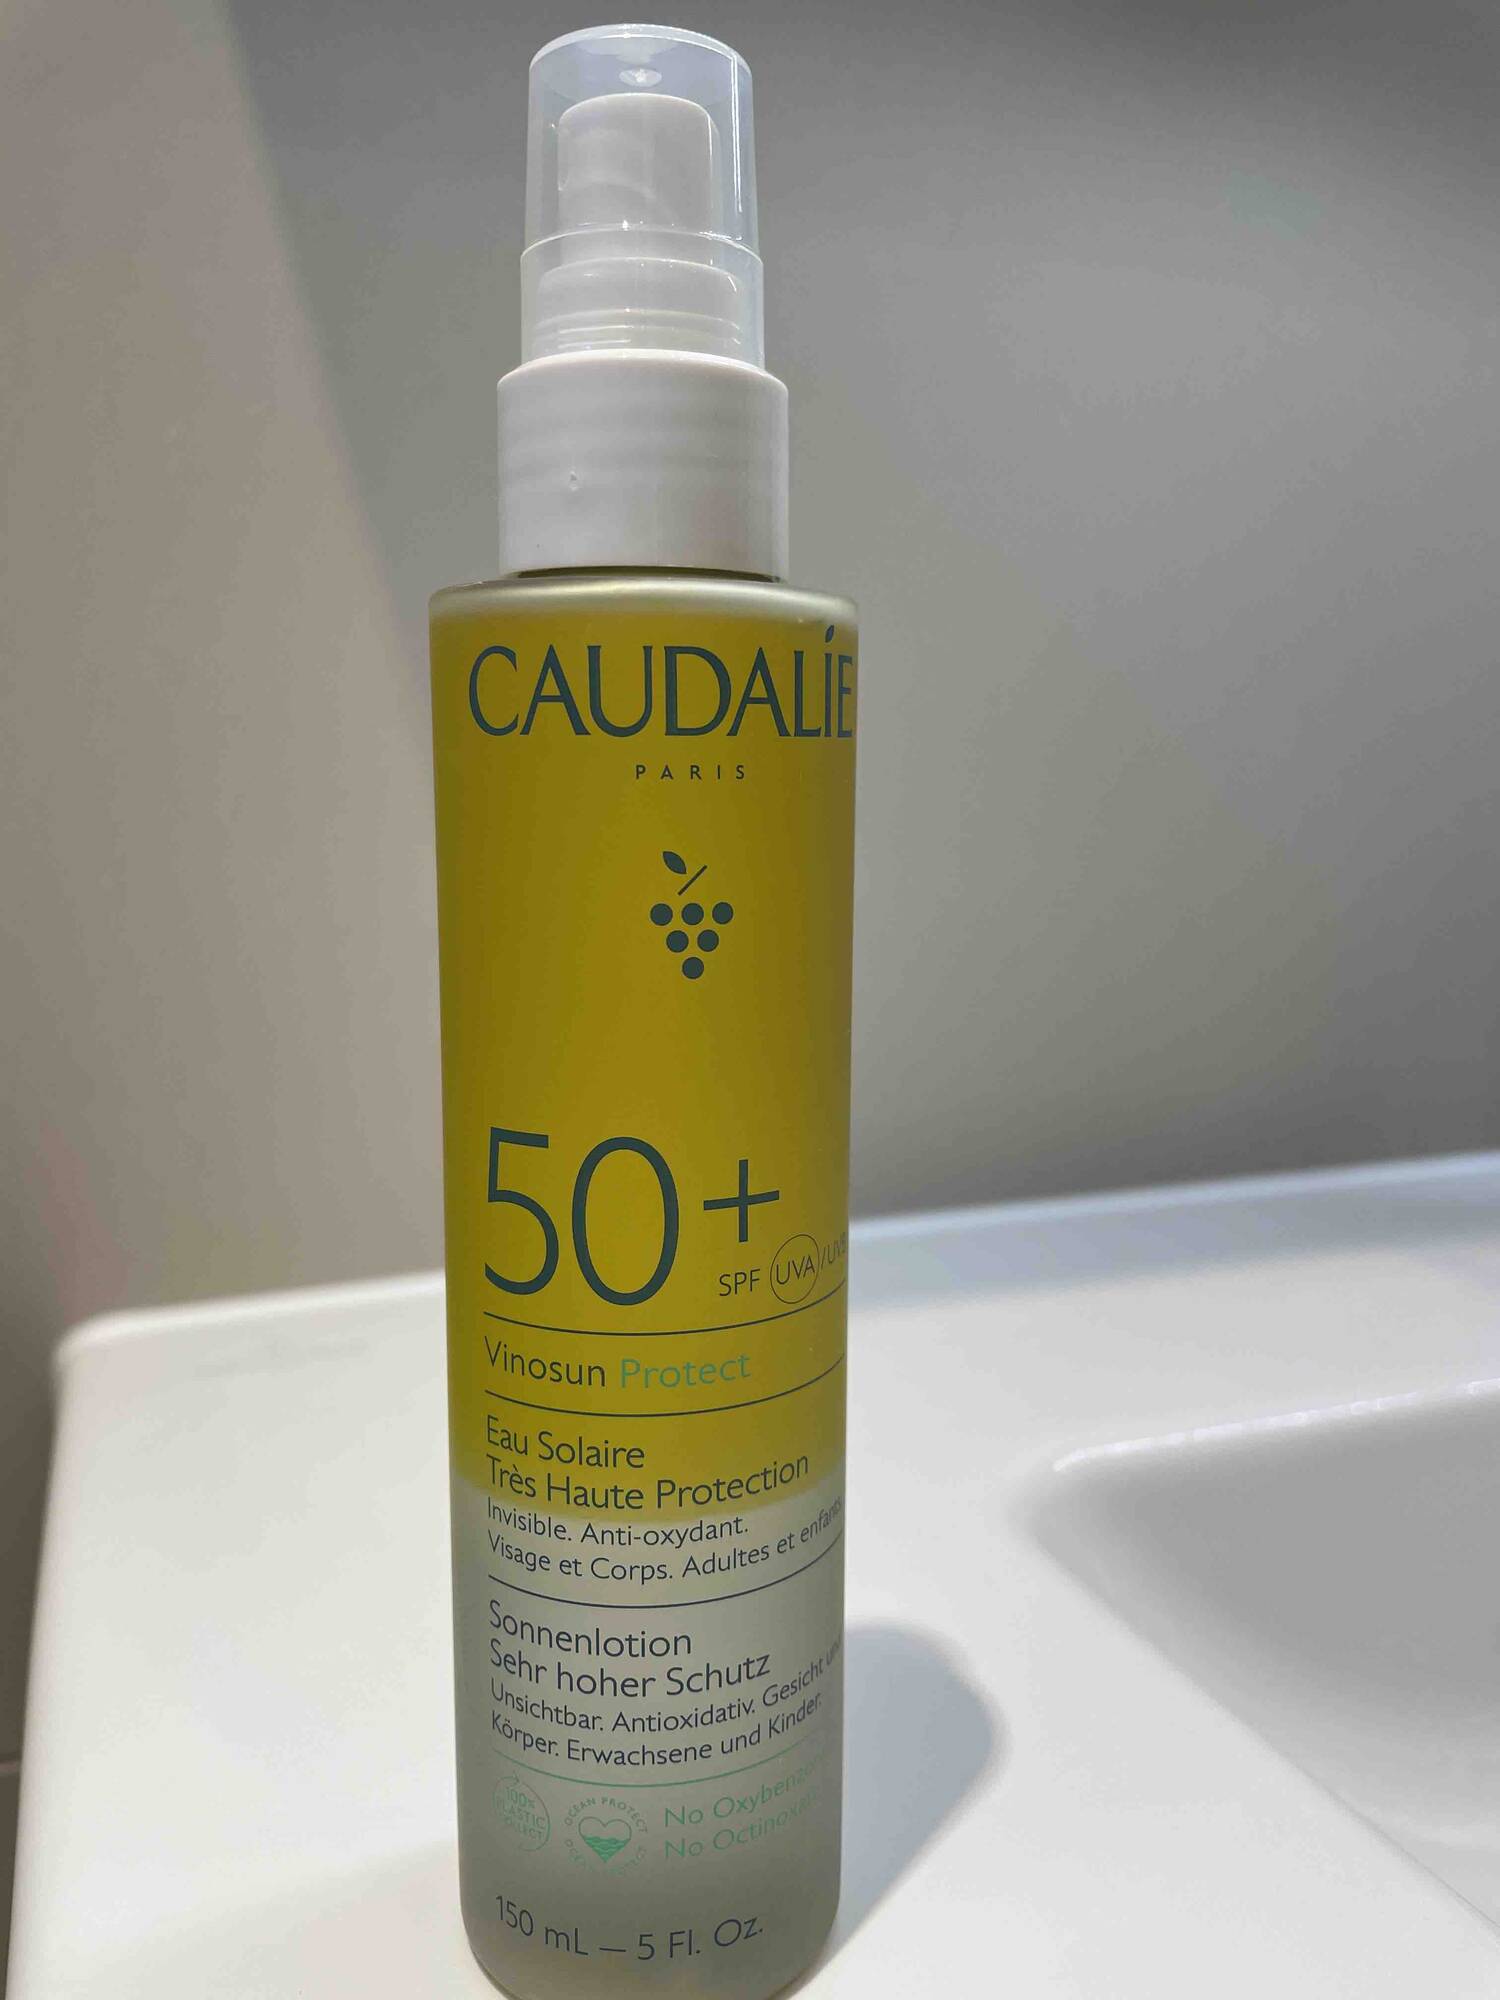 CAUDALIE - Eau solaire très haute protection SPF 50+